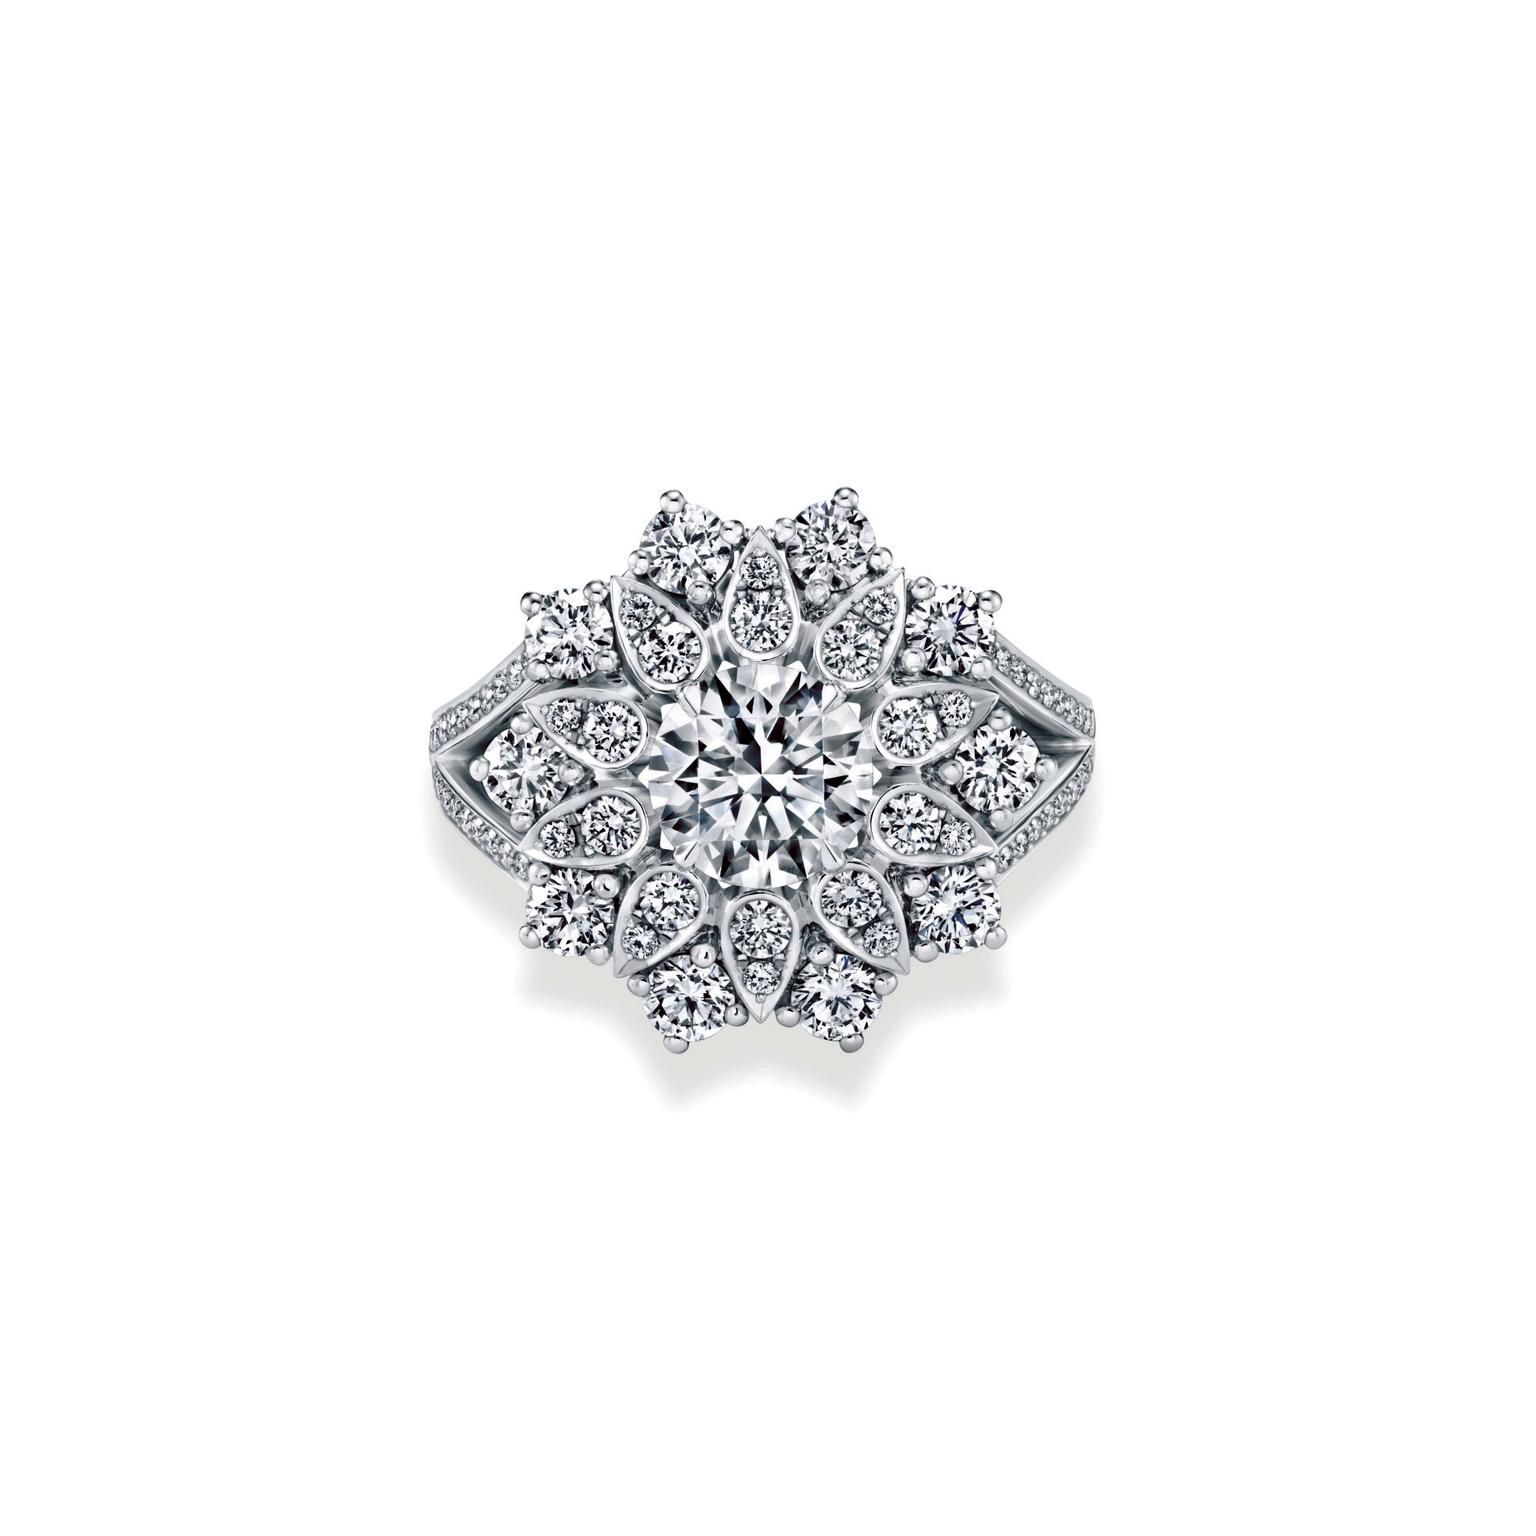 Harry Winston Lotus cluster diamond ring